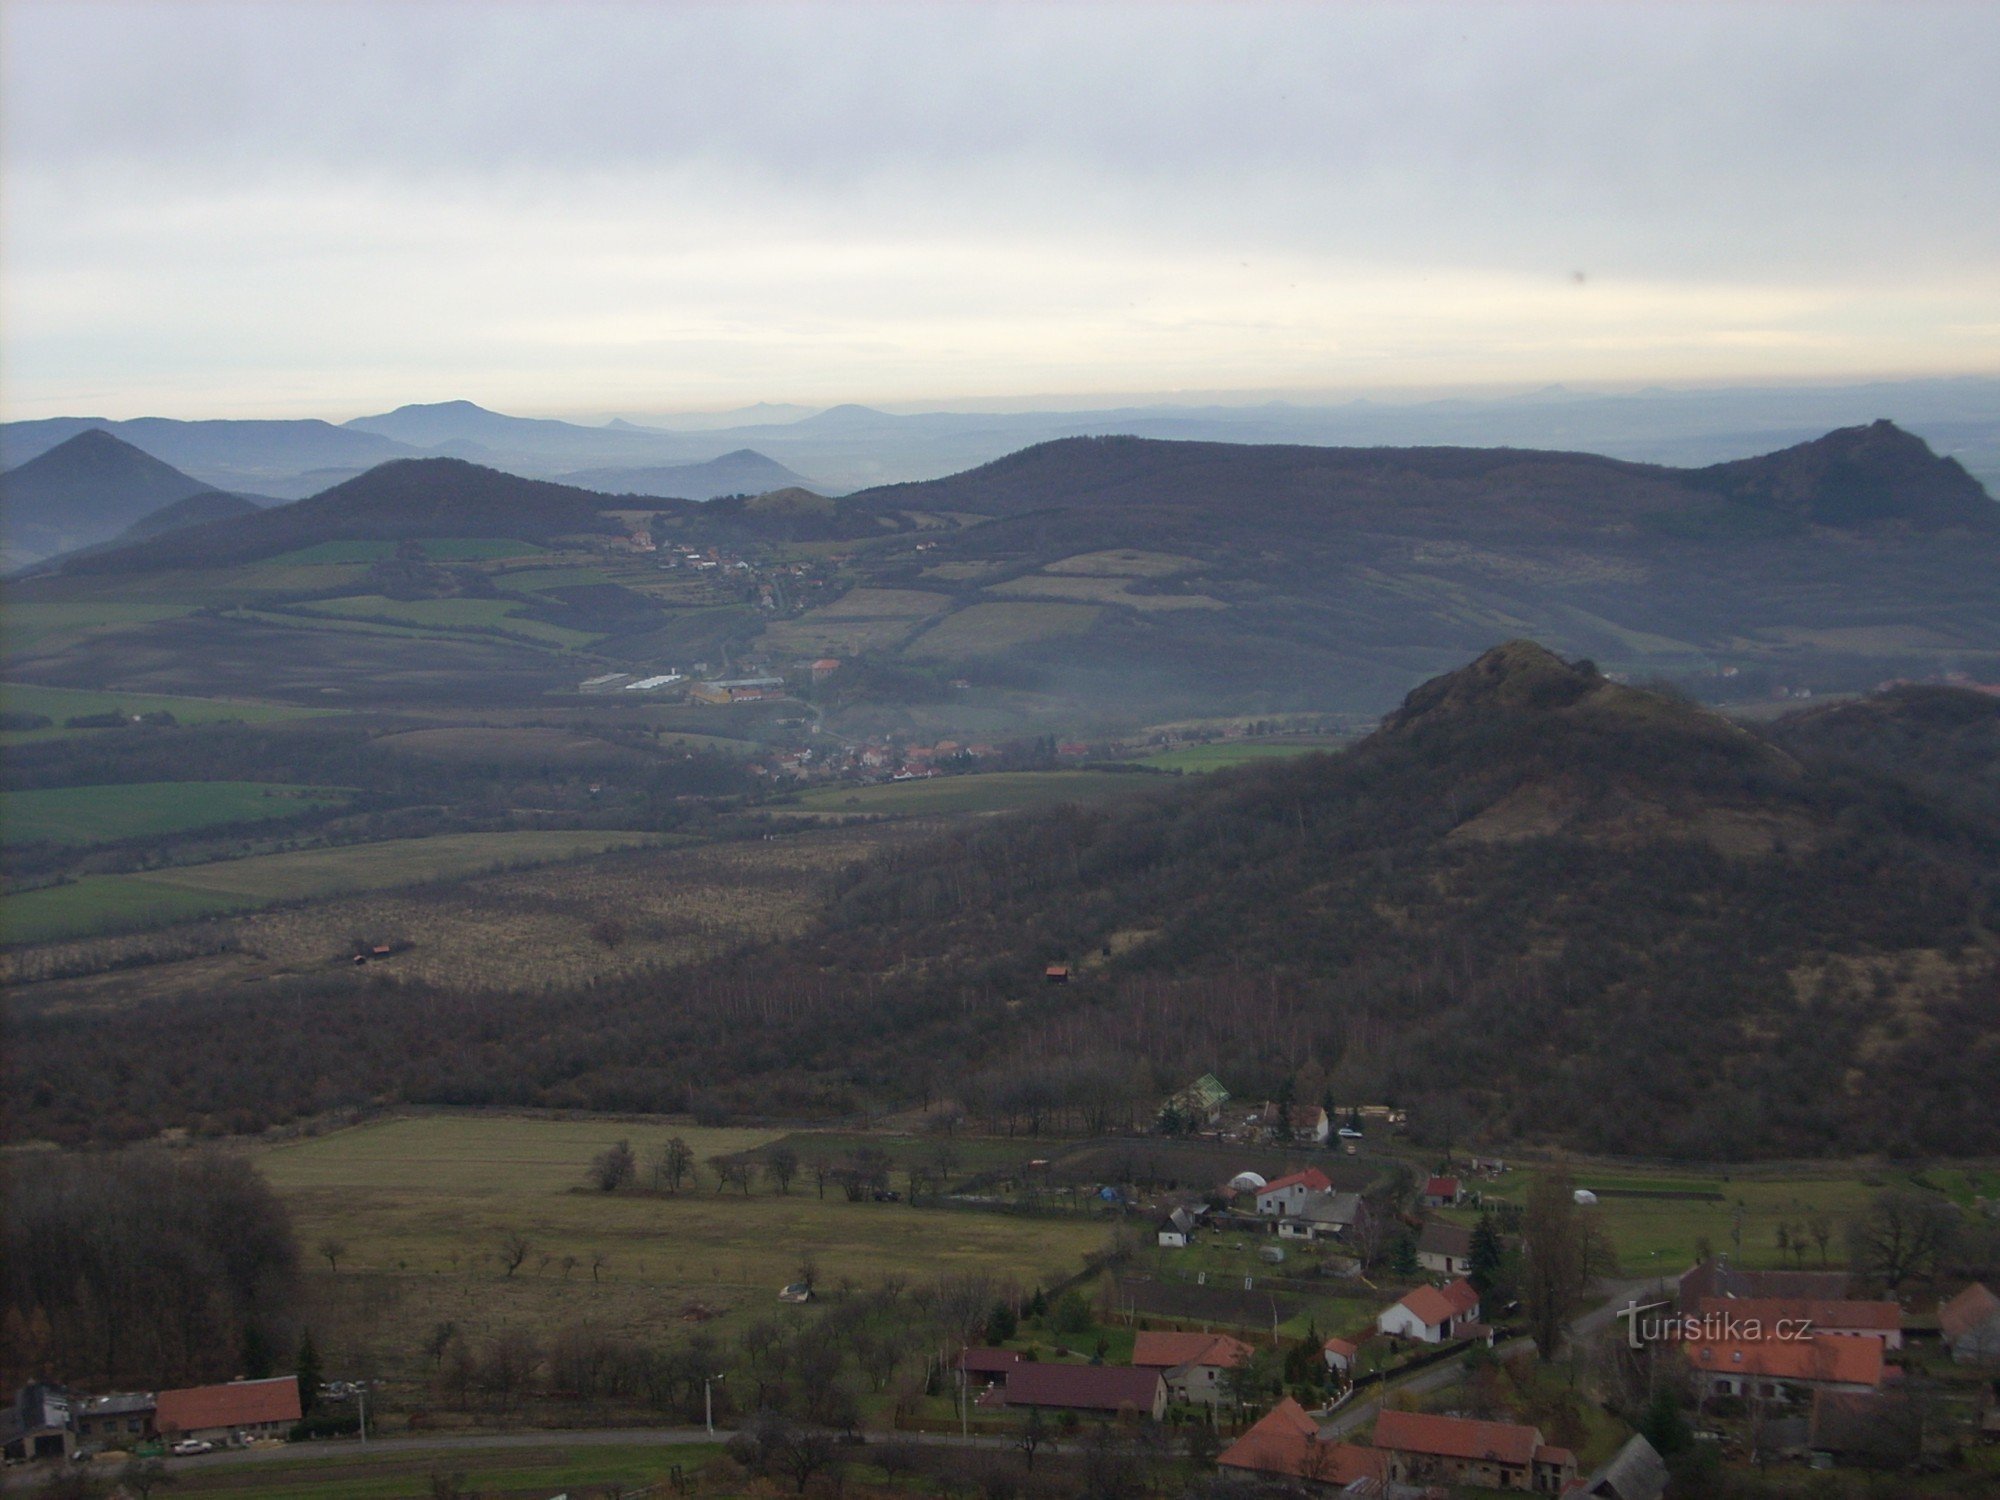 Quang cảnh các đỉnh xung quanh của Český středohoří